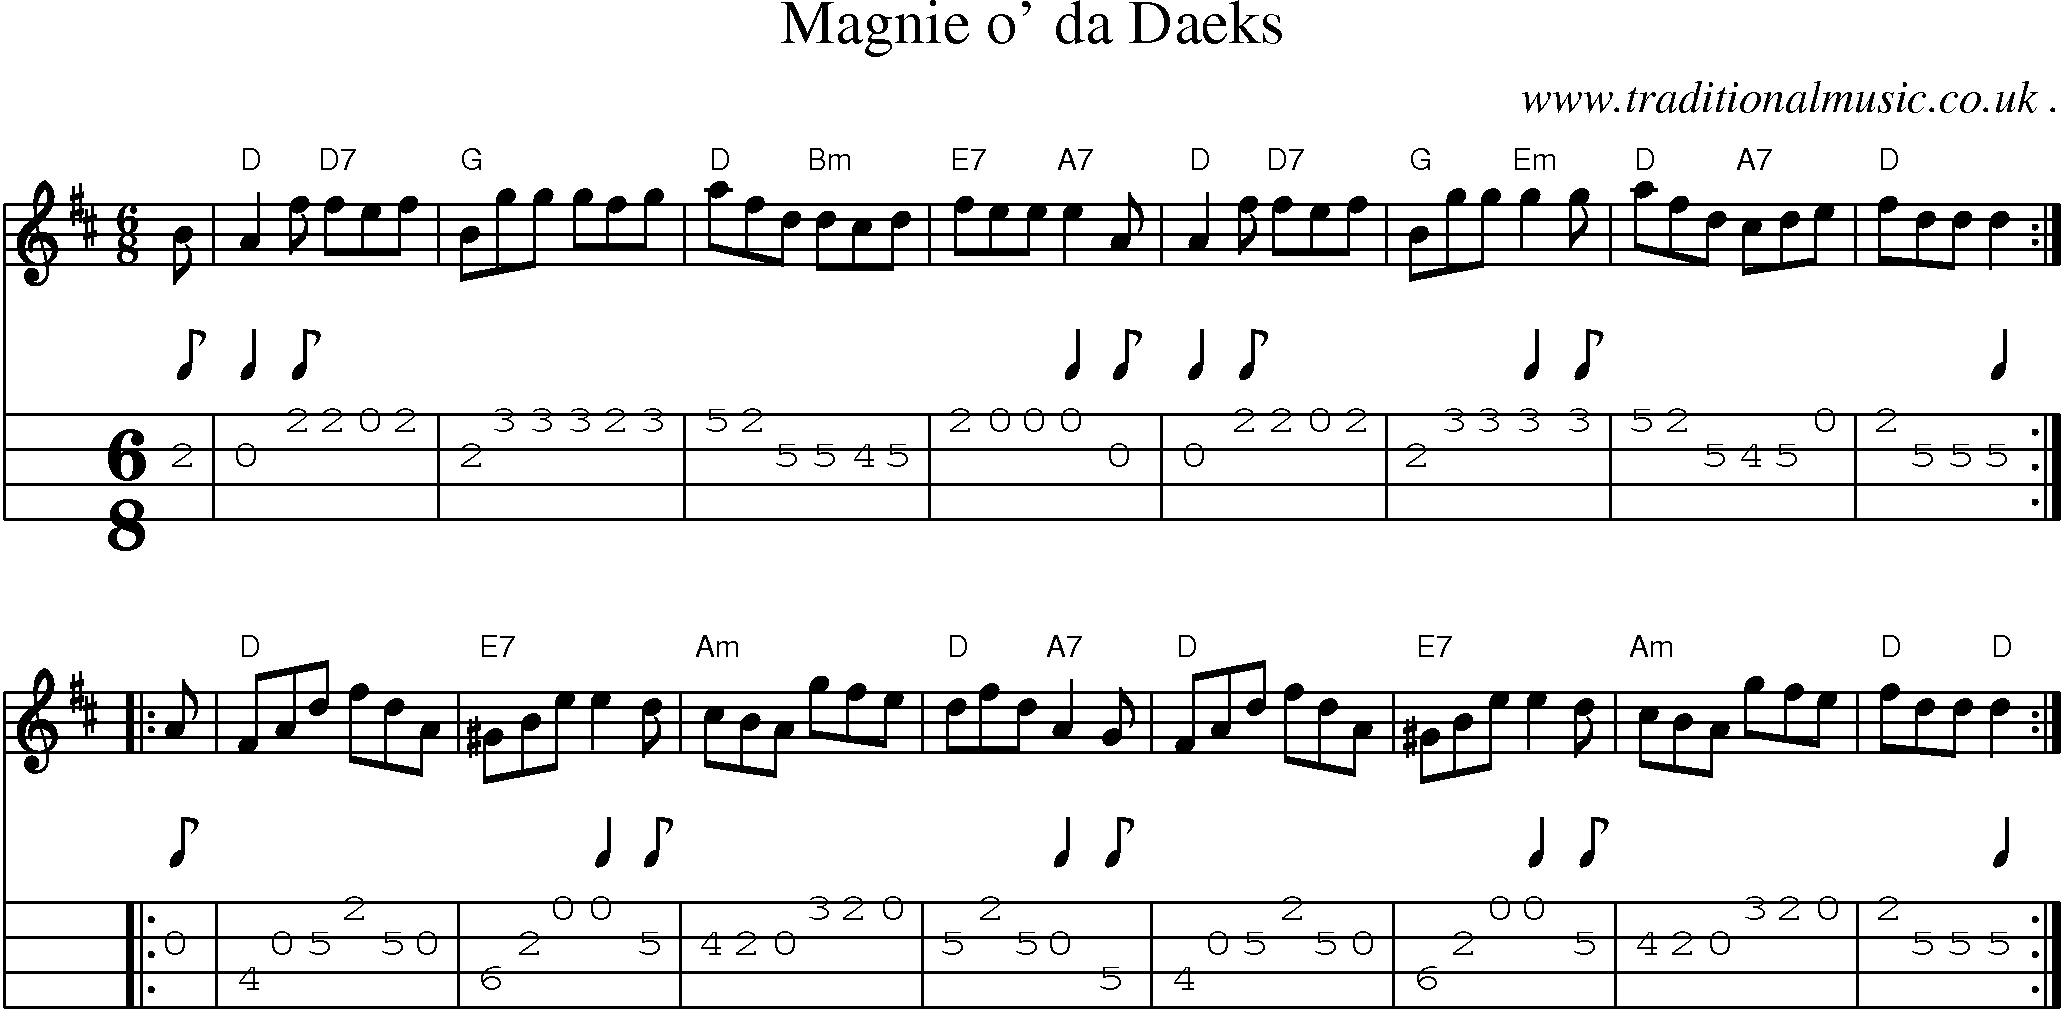 Sheet-music  score, Chords and Mandolin Tabs for Magnie O Da Daeks